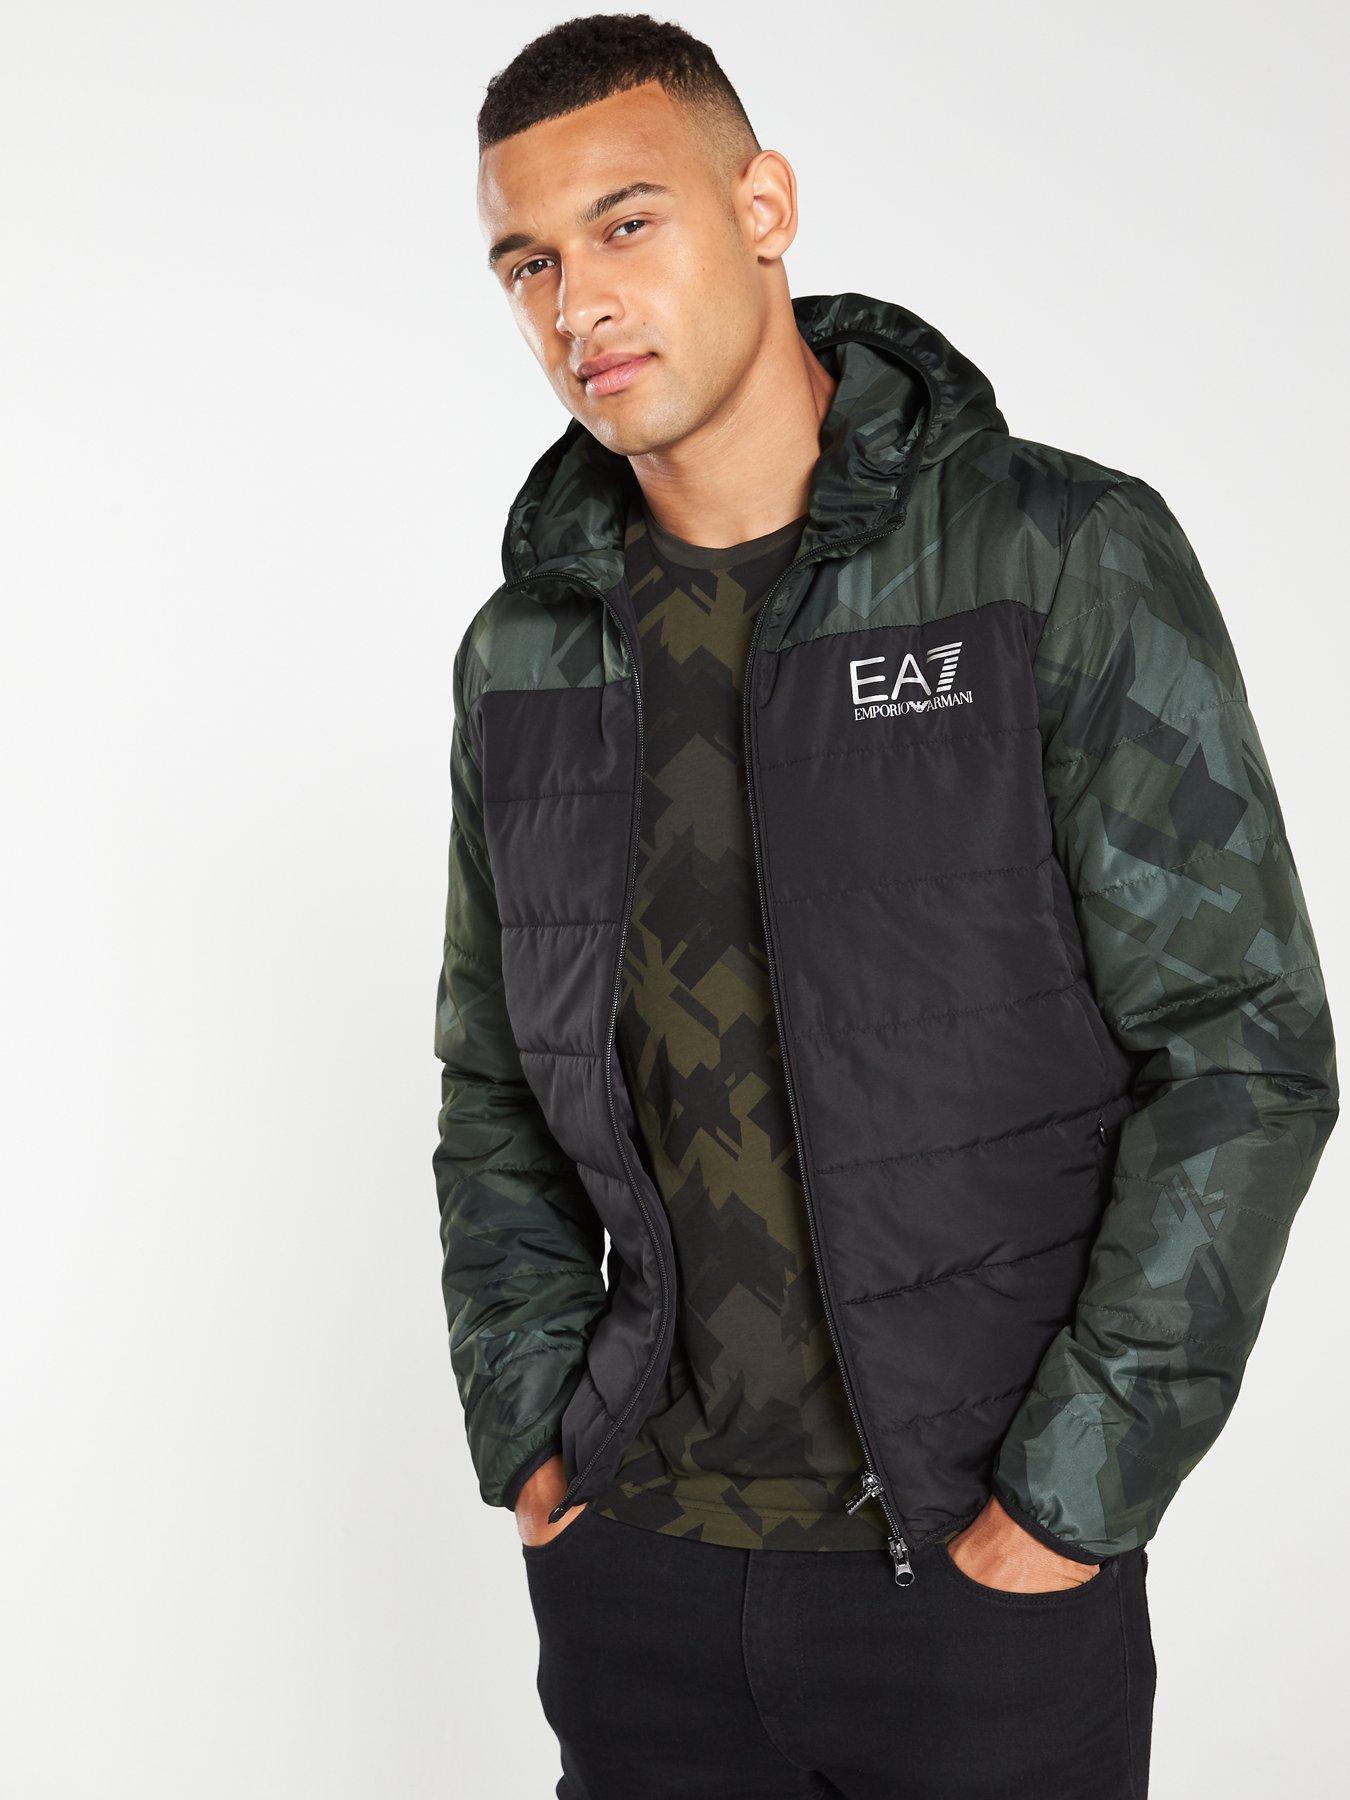 ea7 jackets mens